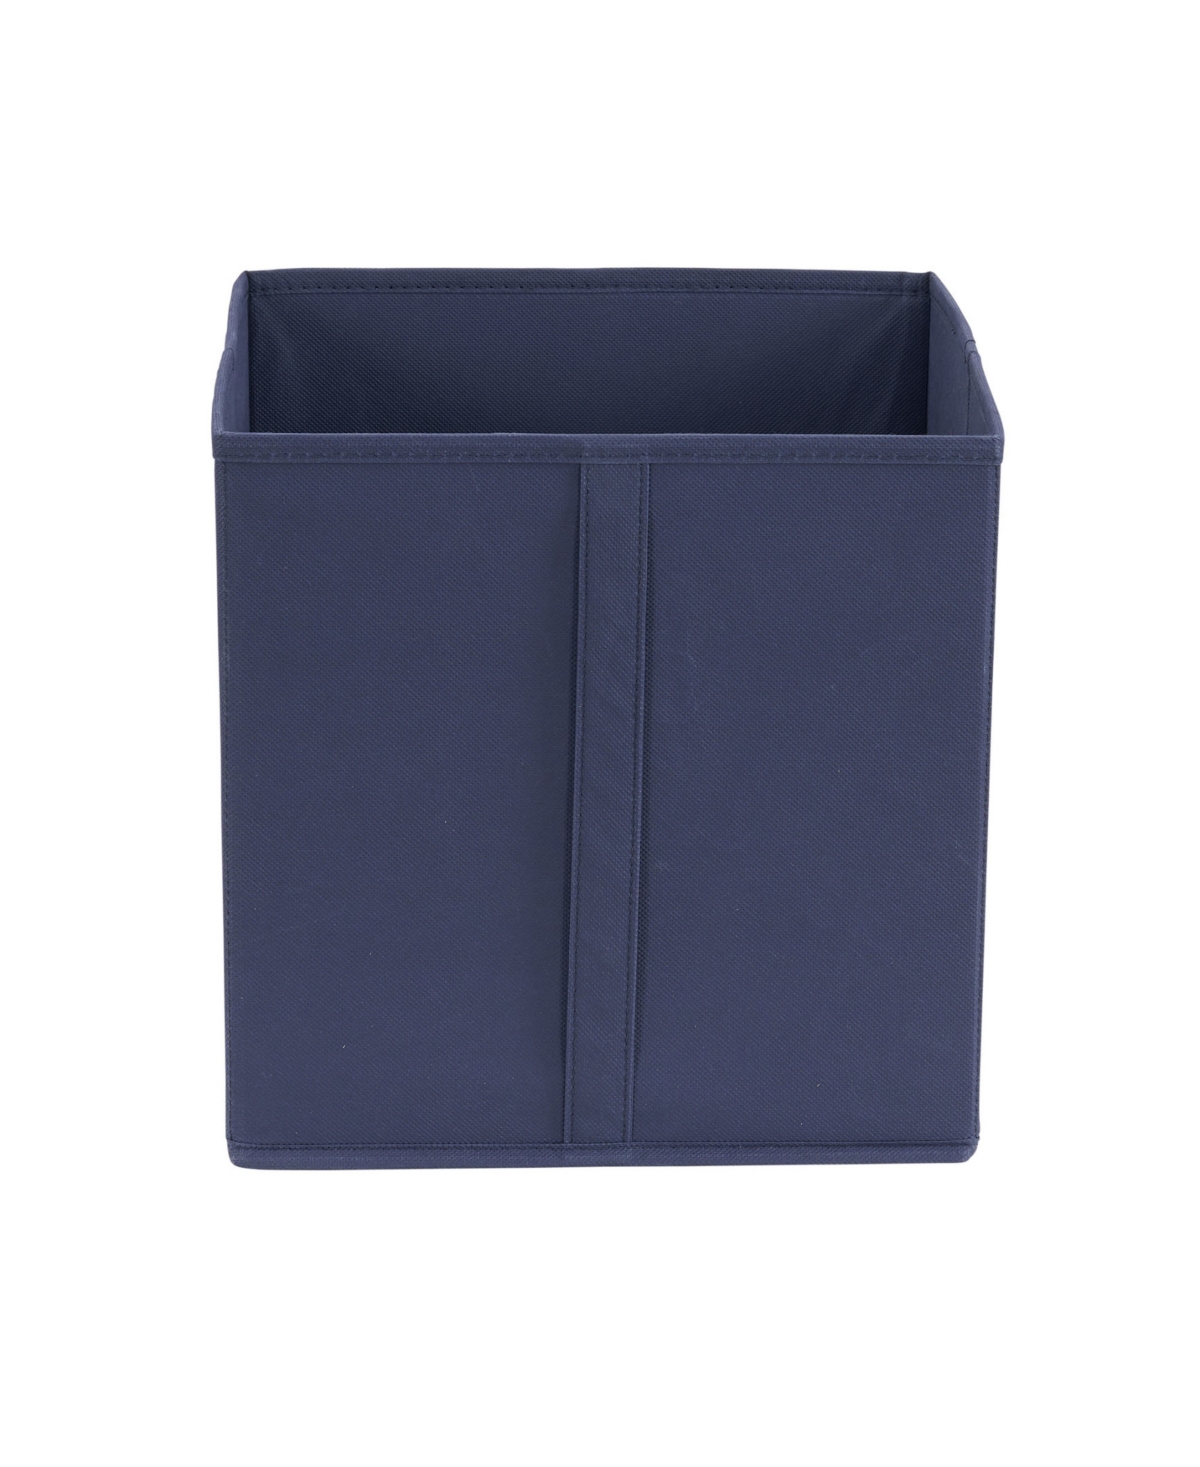 Shop Household Essentials 6 Piece Bin Set, Navy Vertical Pull In Blue